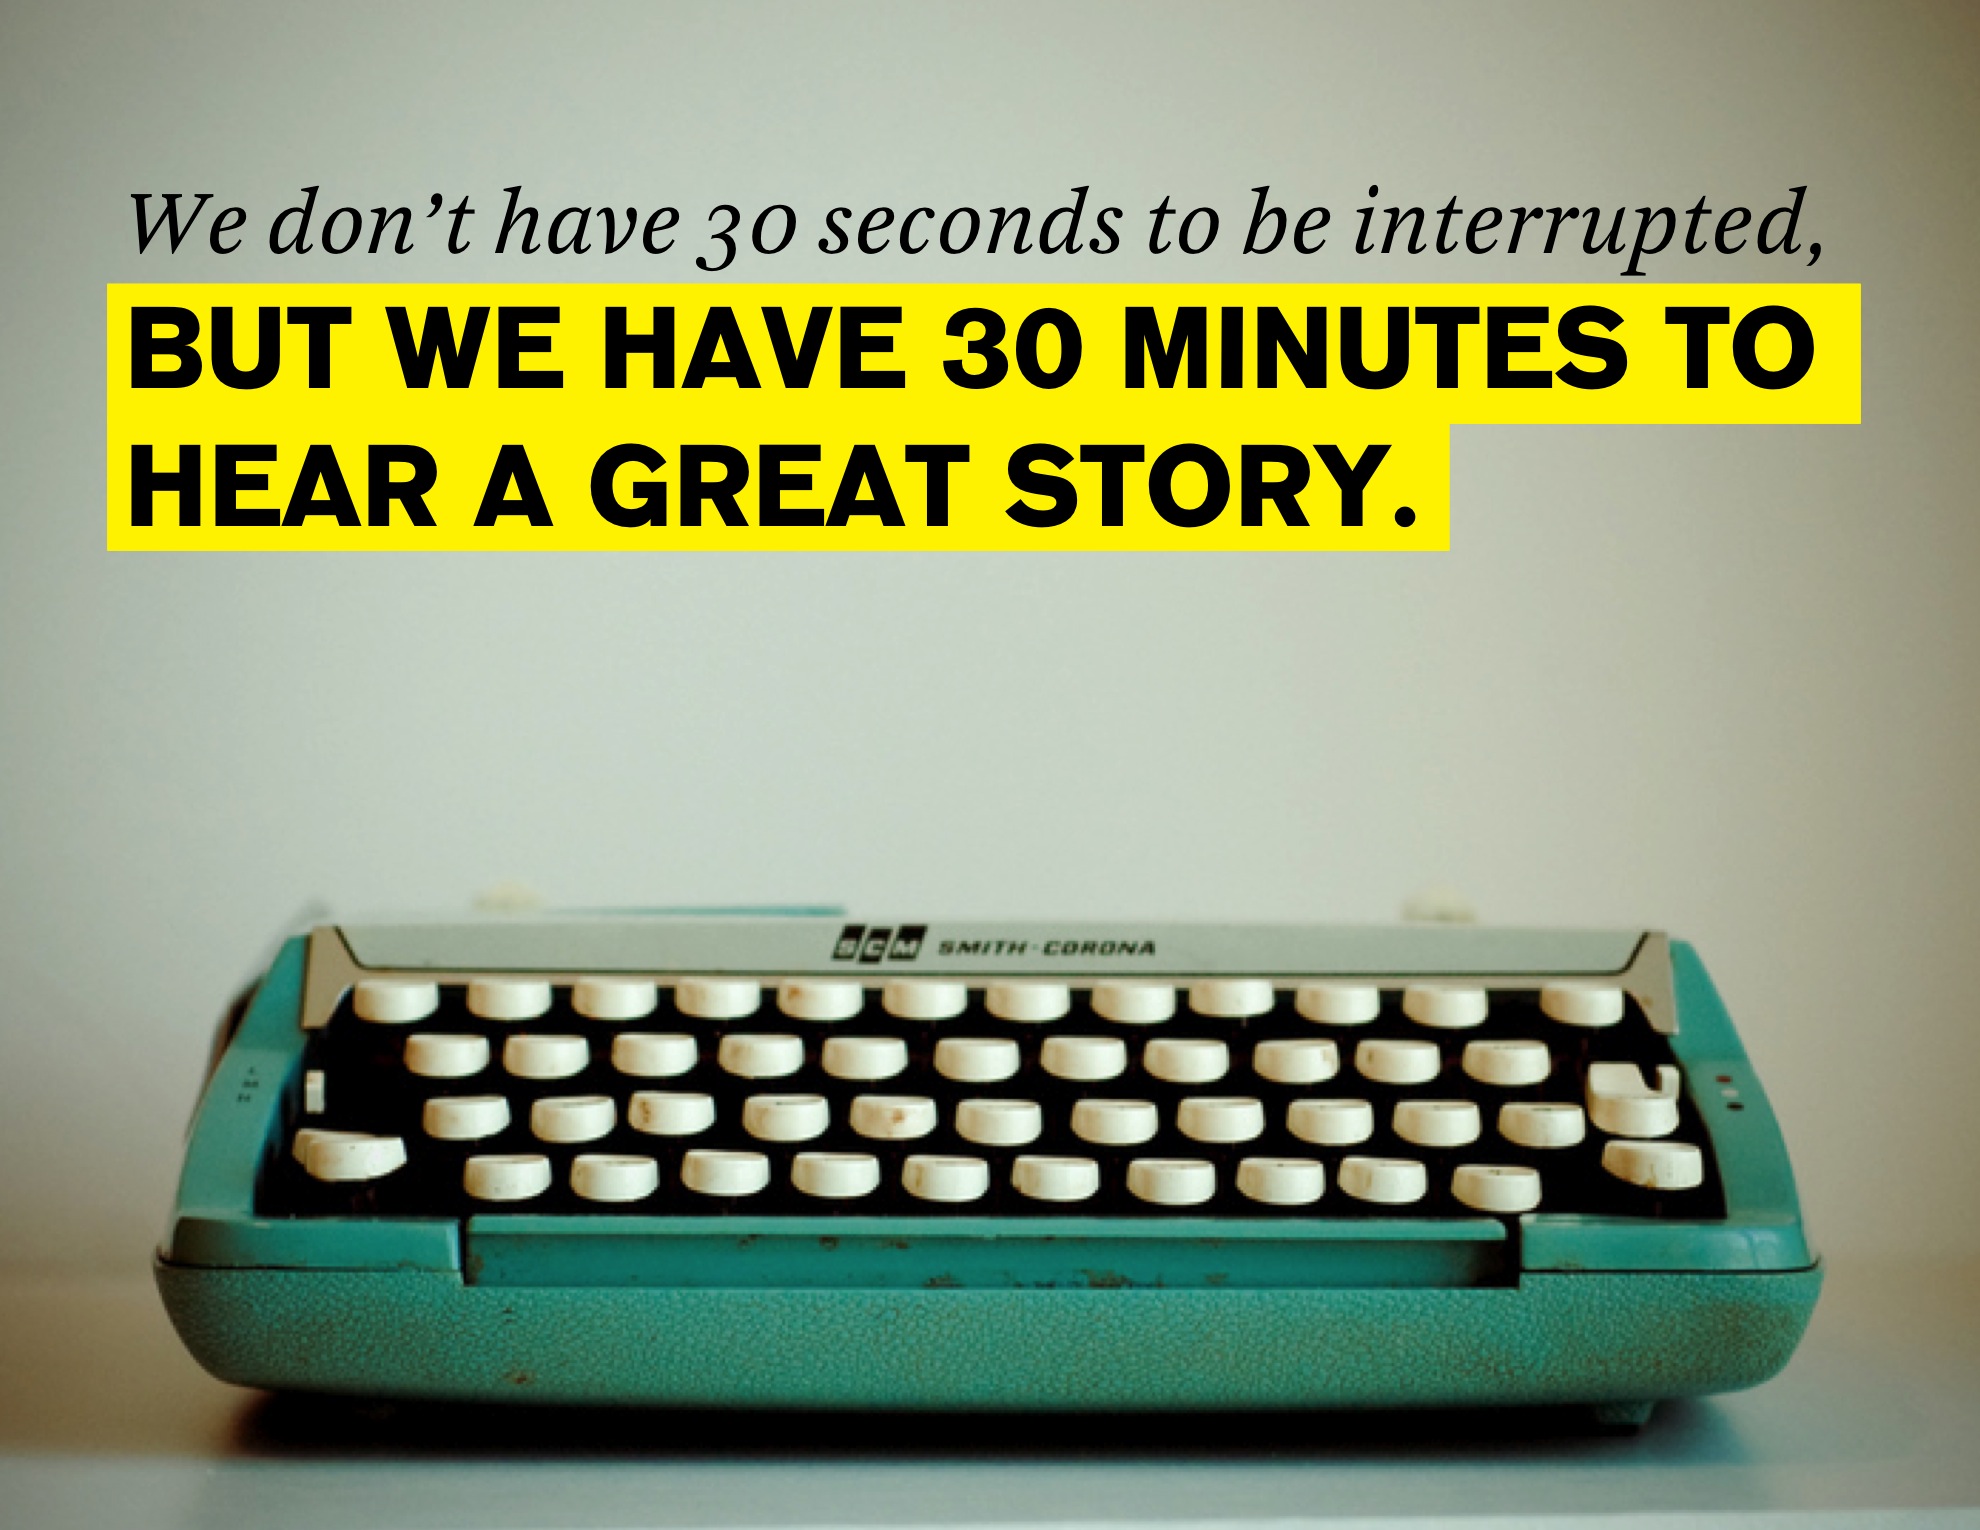 Luôn có nhiều hơn một lý do để chúng tôi lắng nghe câu chuyện của bạn.